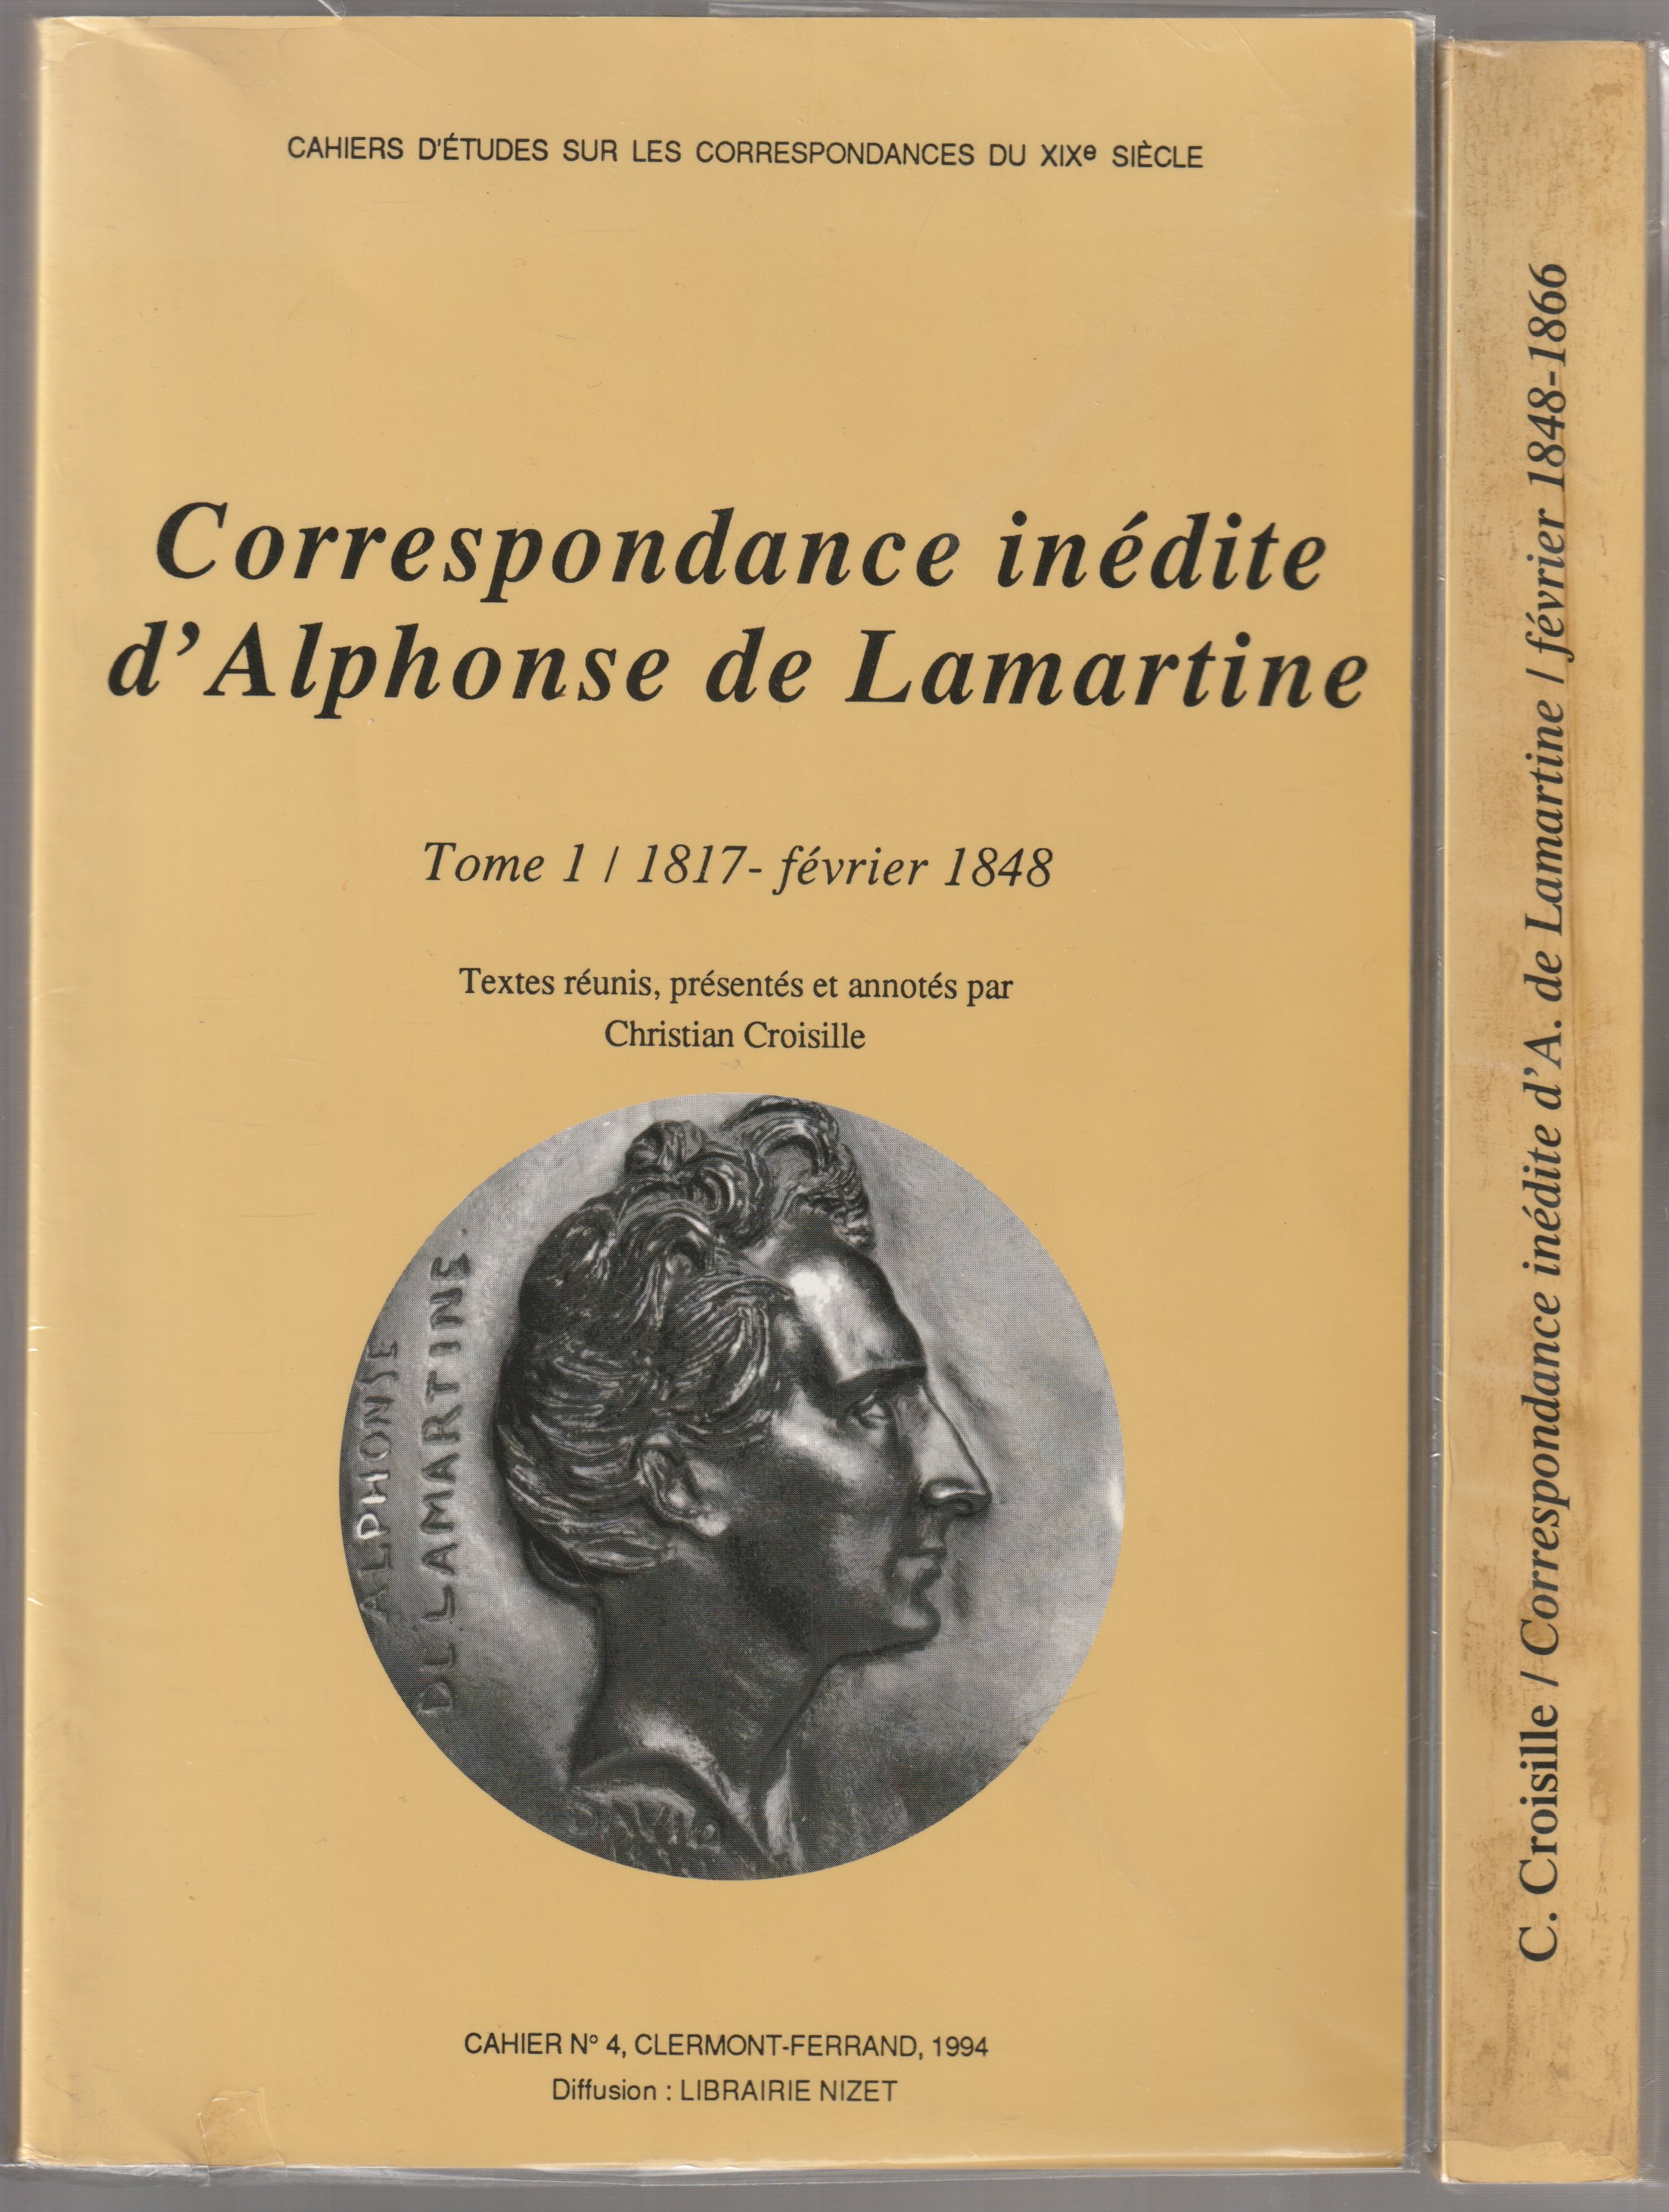 Correspondance inedite d'Alphonse de Lamartine.